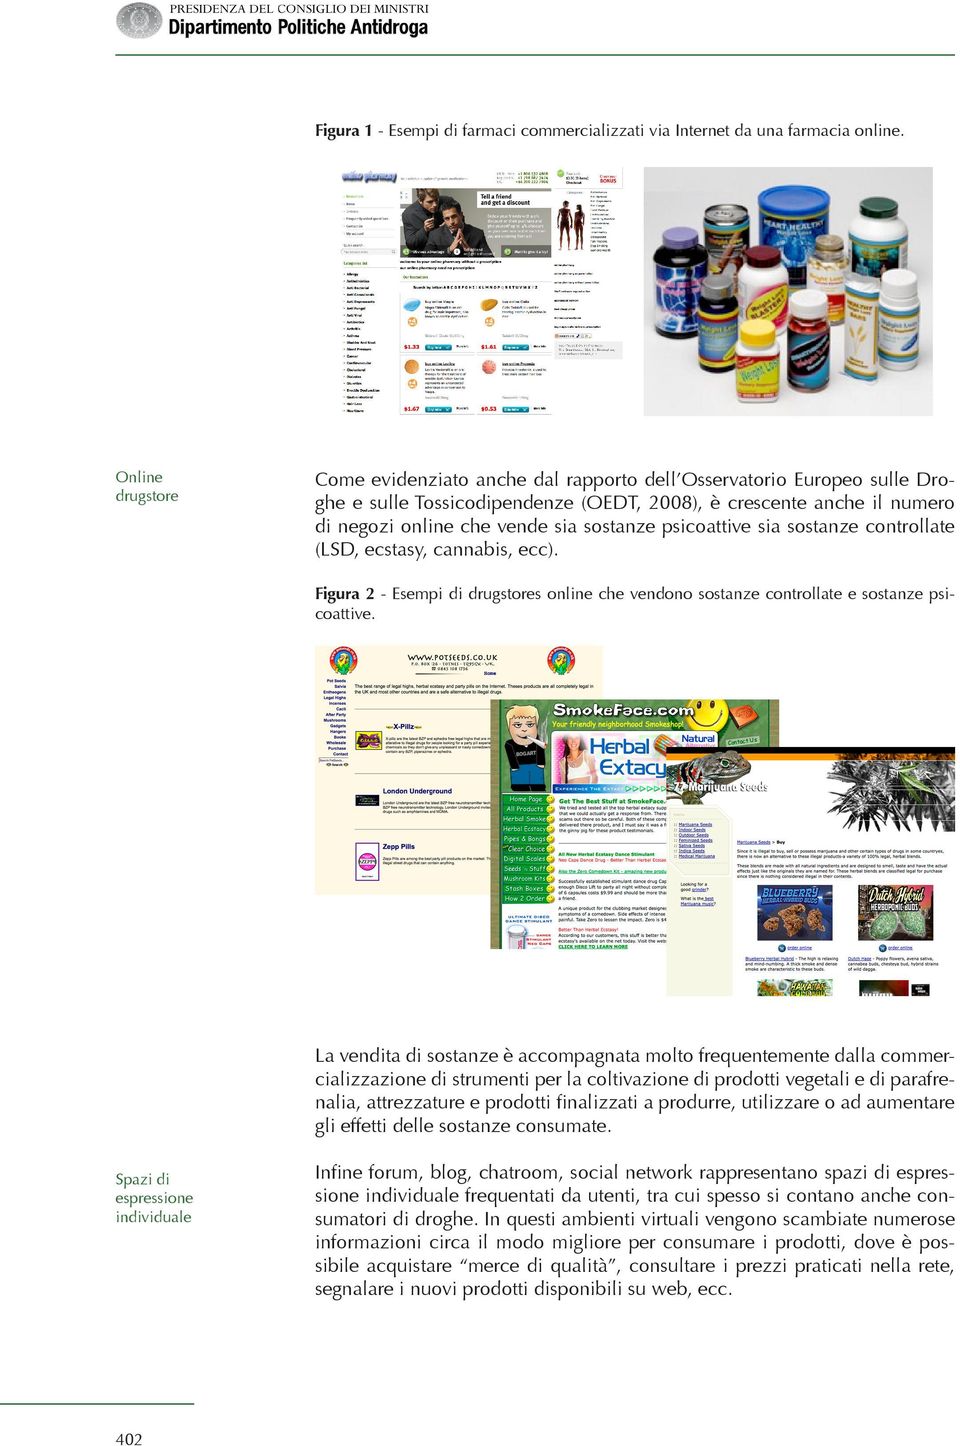 psicoattive sia sostanze controllate (LSD, ecstasy, cannabis, ecc). Figura 2 - Esempi di drugstores online che vendono sostanze controllate e sostanze psicoattive.